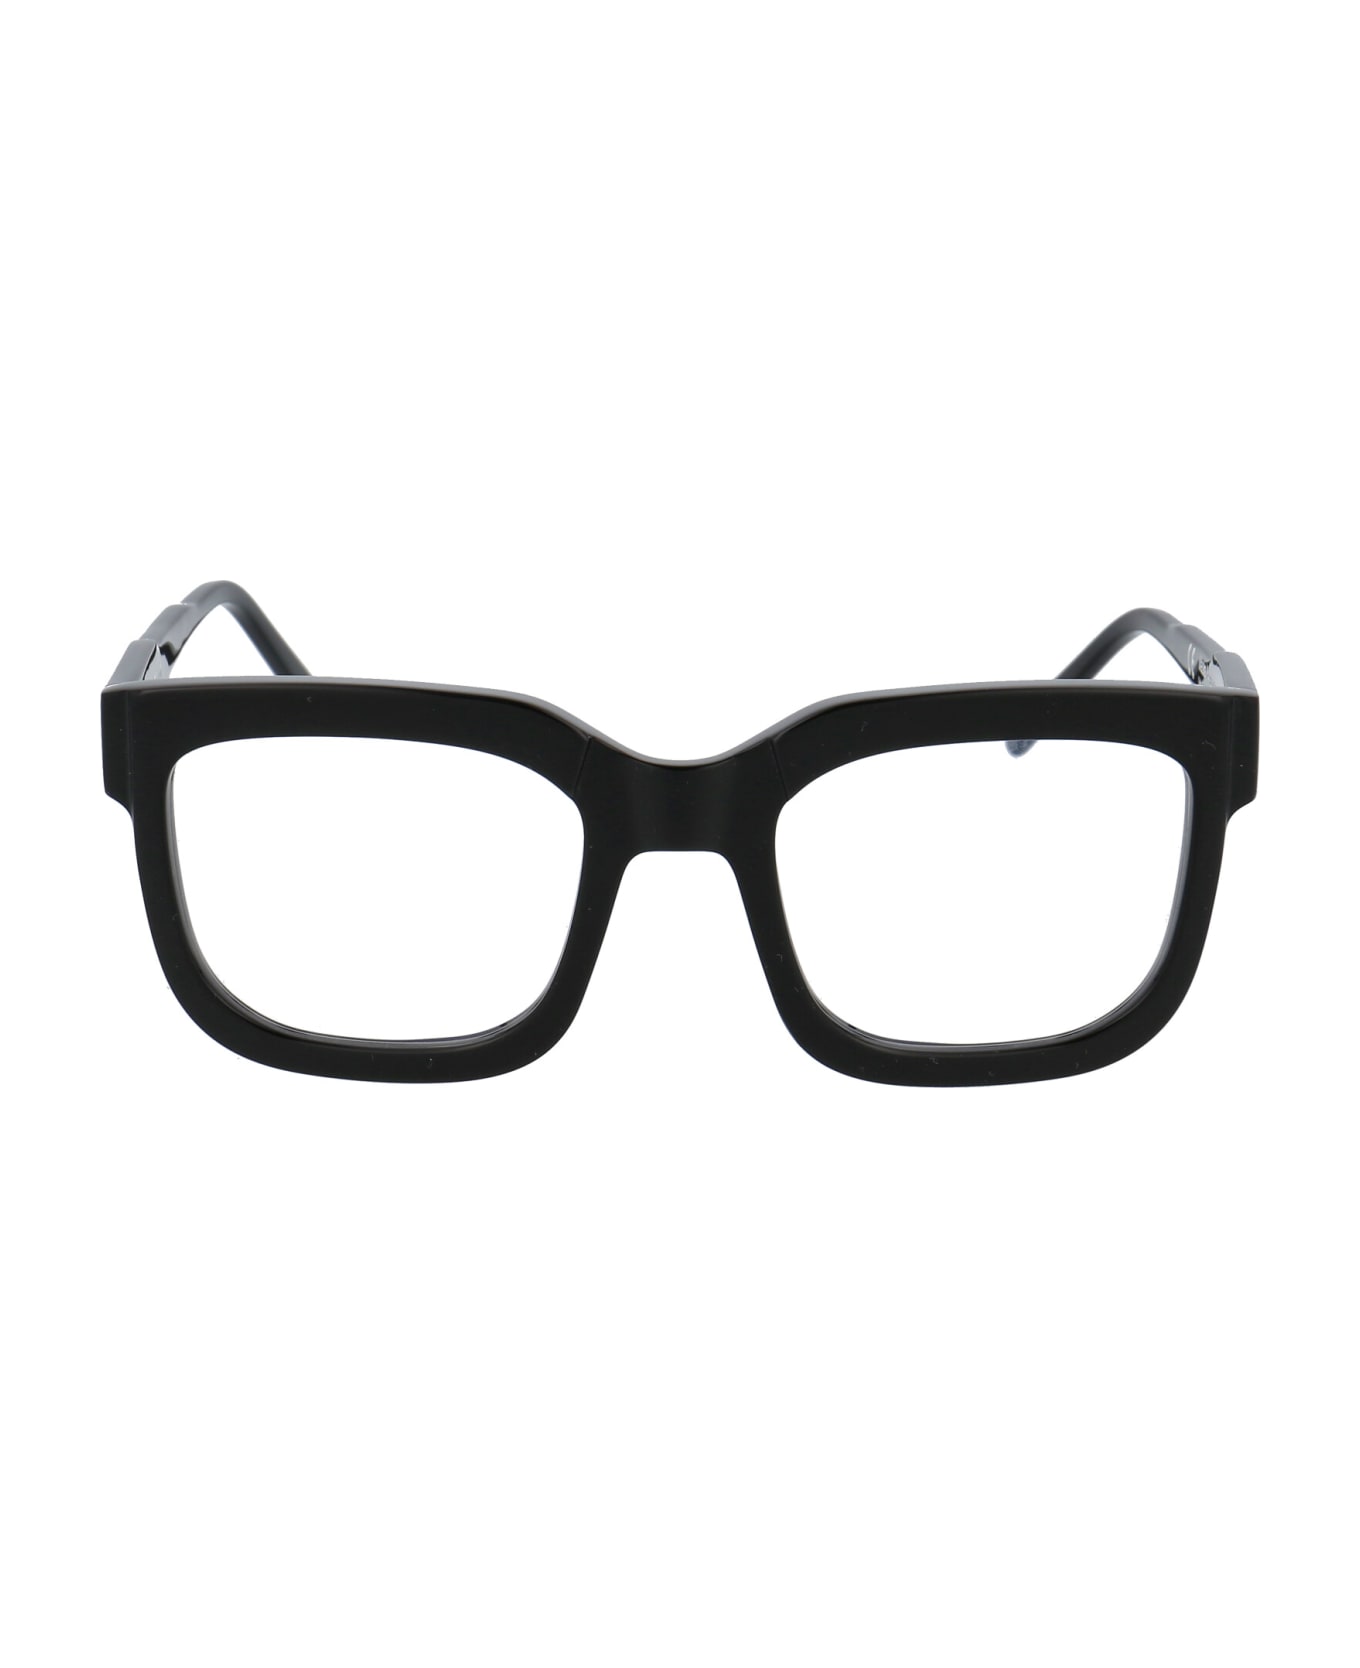 Kuboraum Maske K4 Glasses - BS BLACK アイウェア